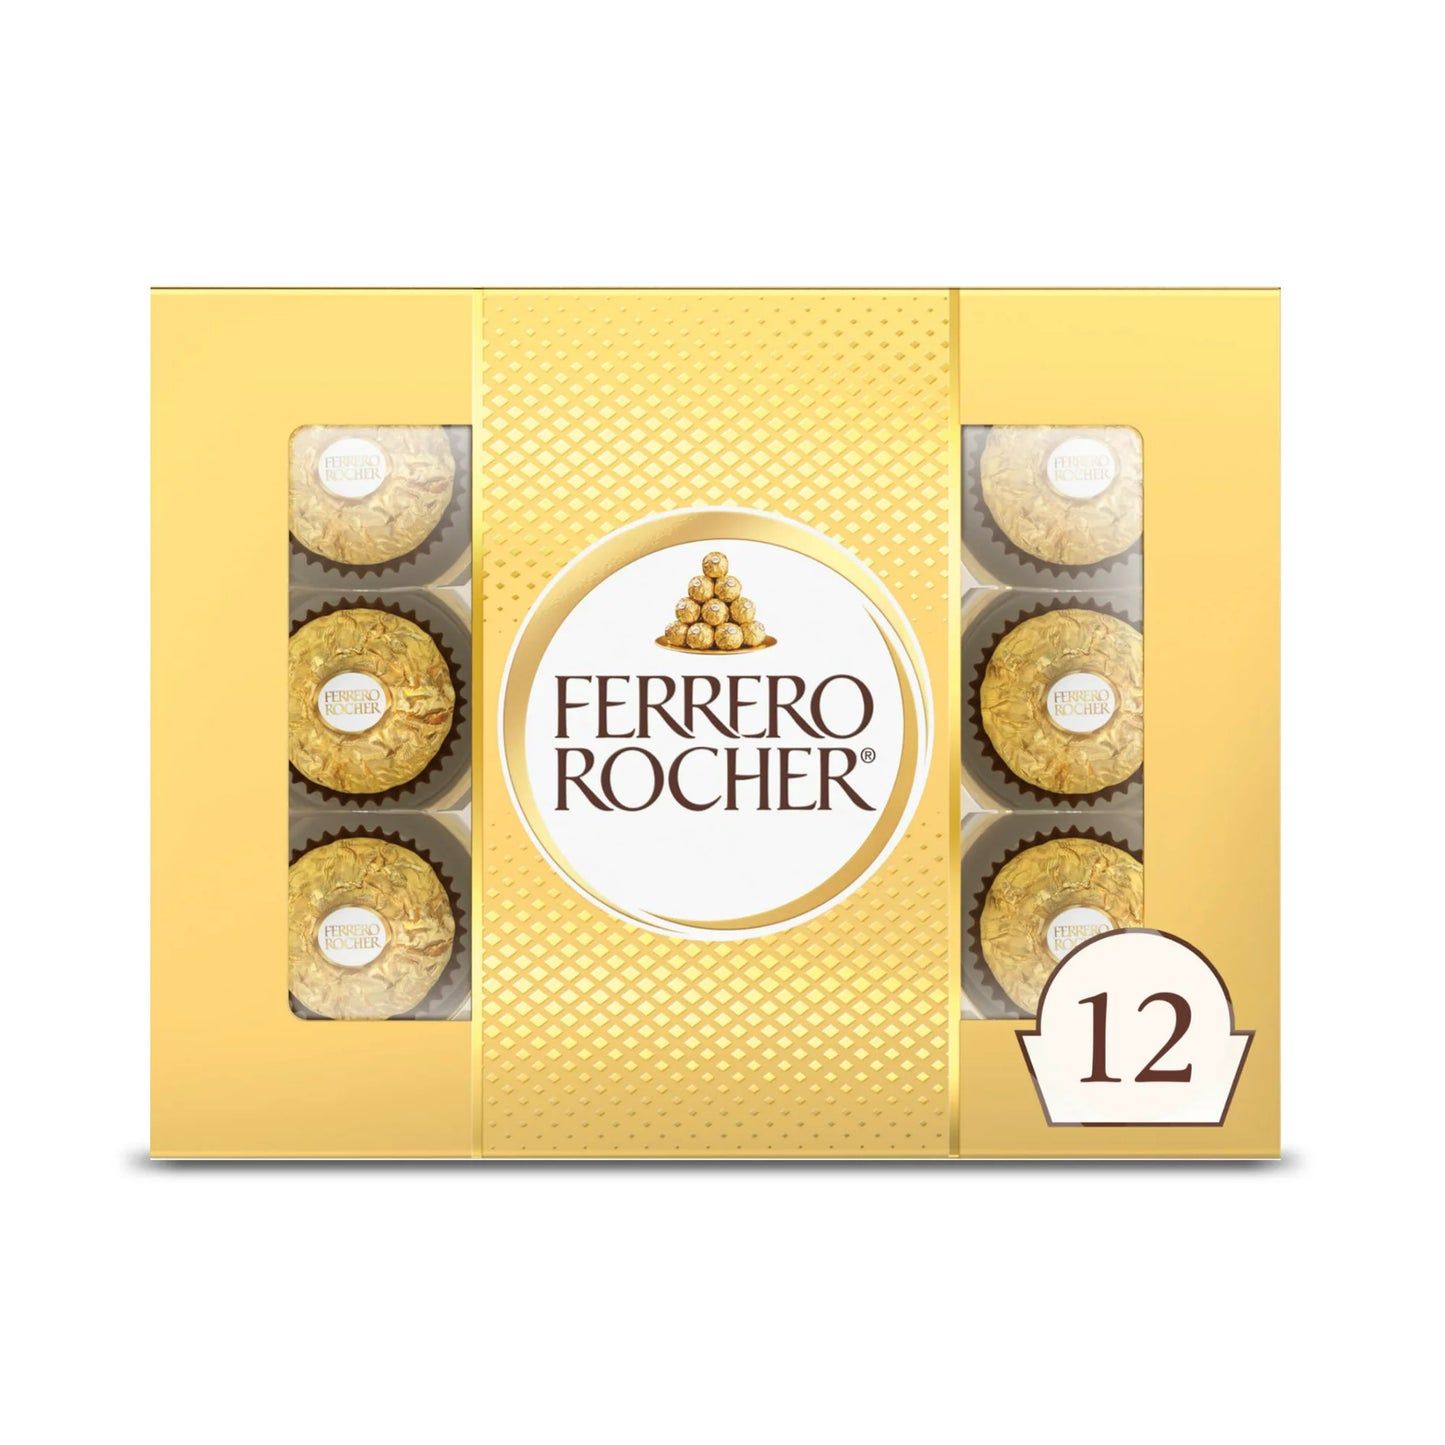 Chocolates Ferrero Rocher 12 Count